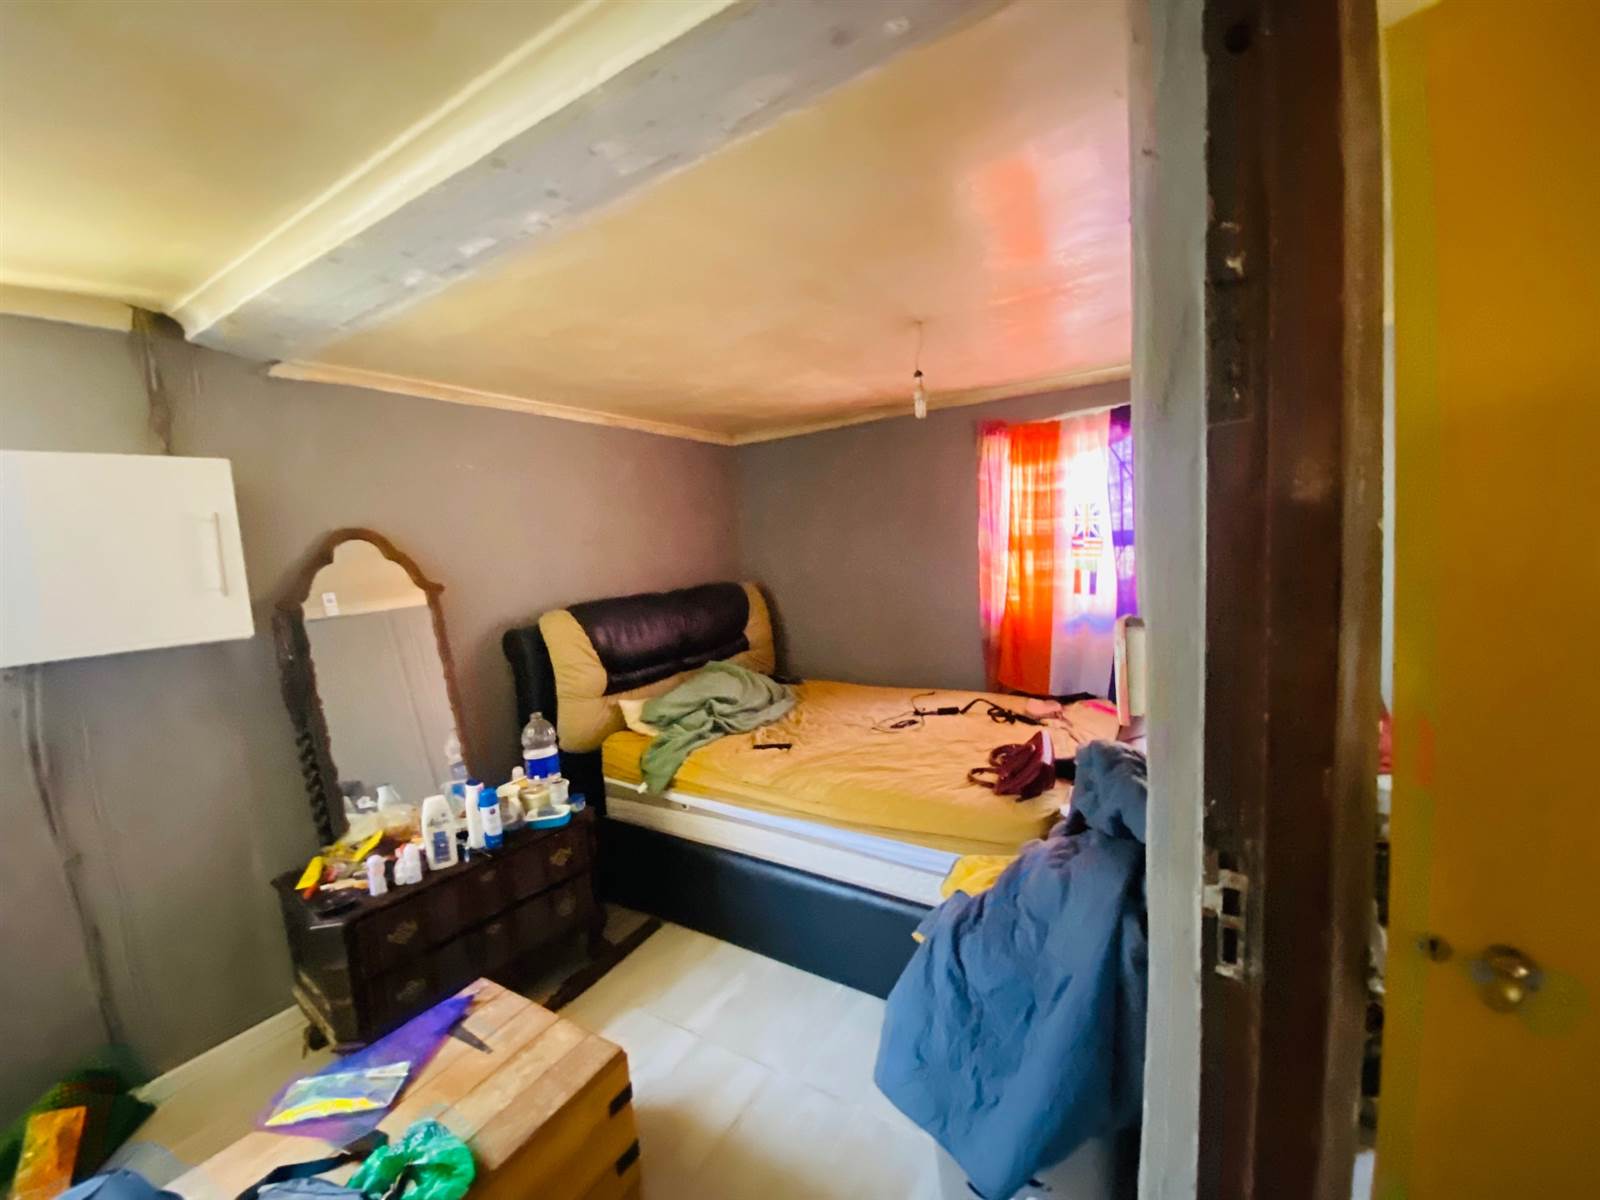 2 Bed House in Khayelitsha photo number 6